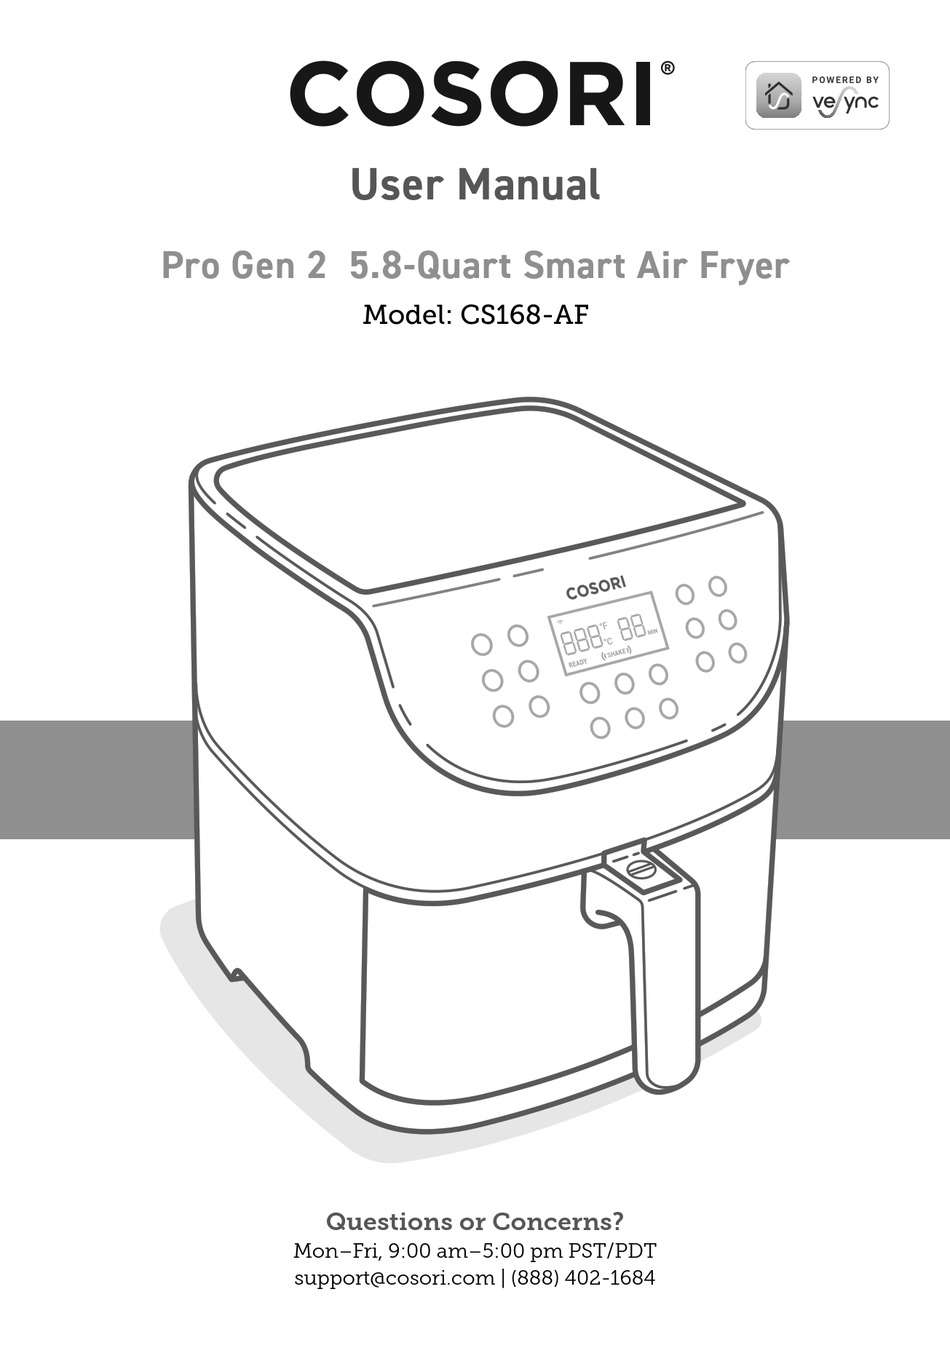 COSORI CS168-AF Pro Gen 2 5.8-Quart Smart Air Fryer User Manual